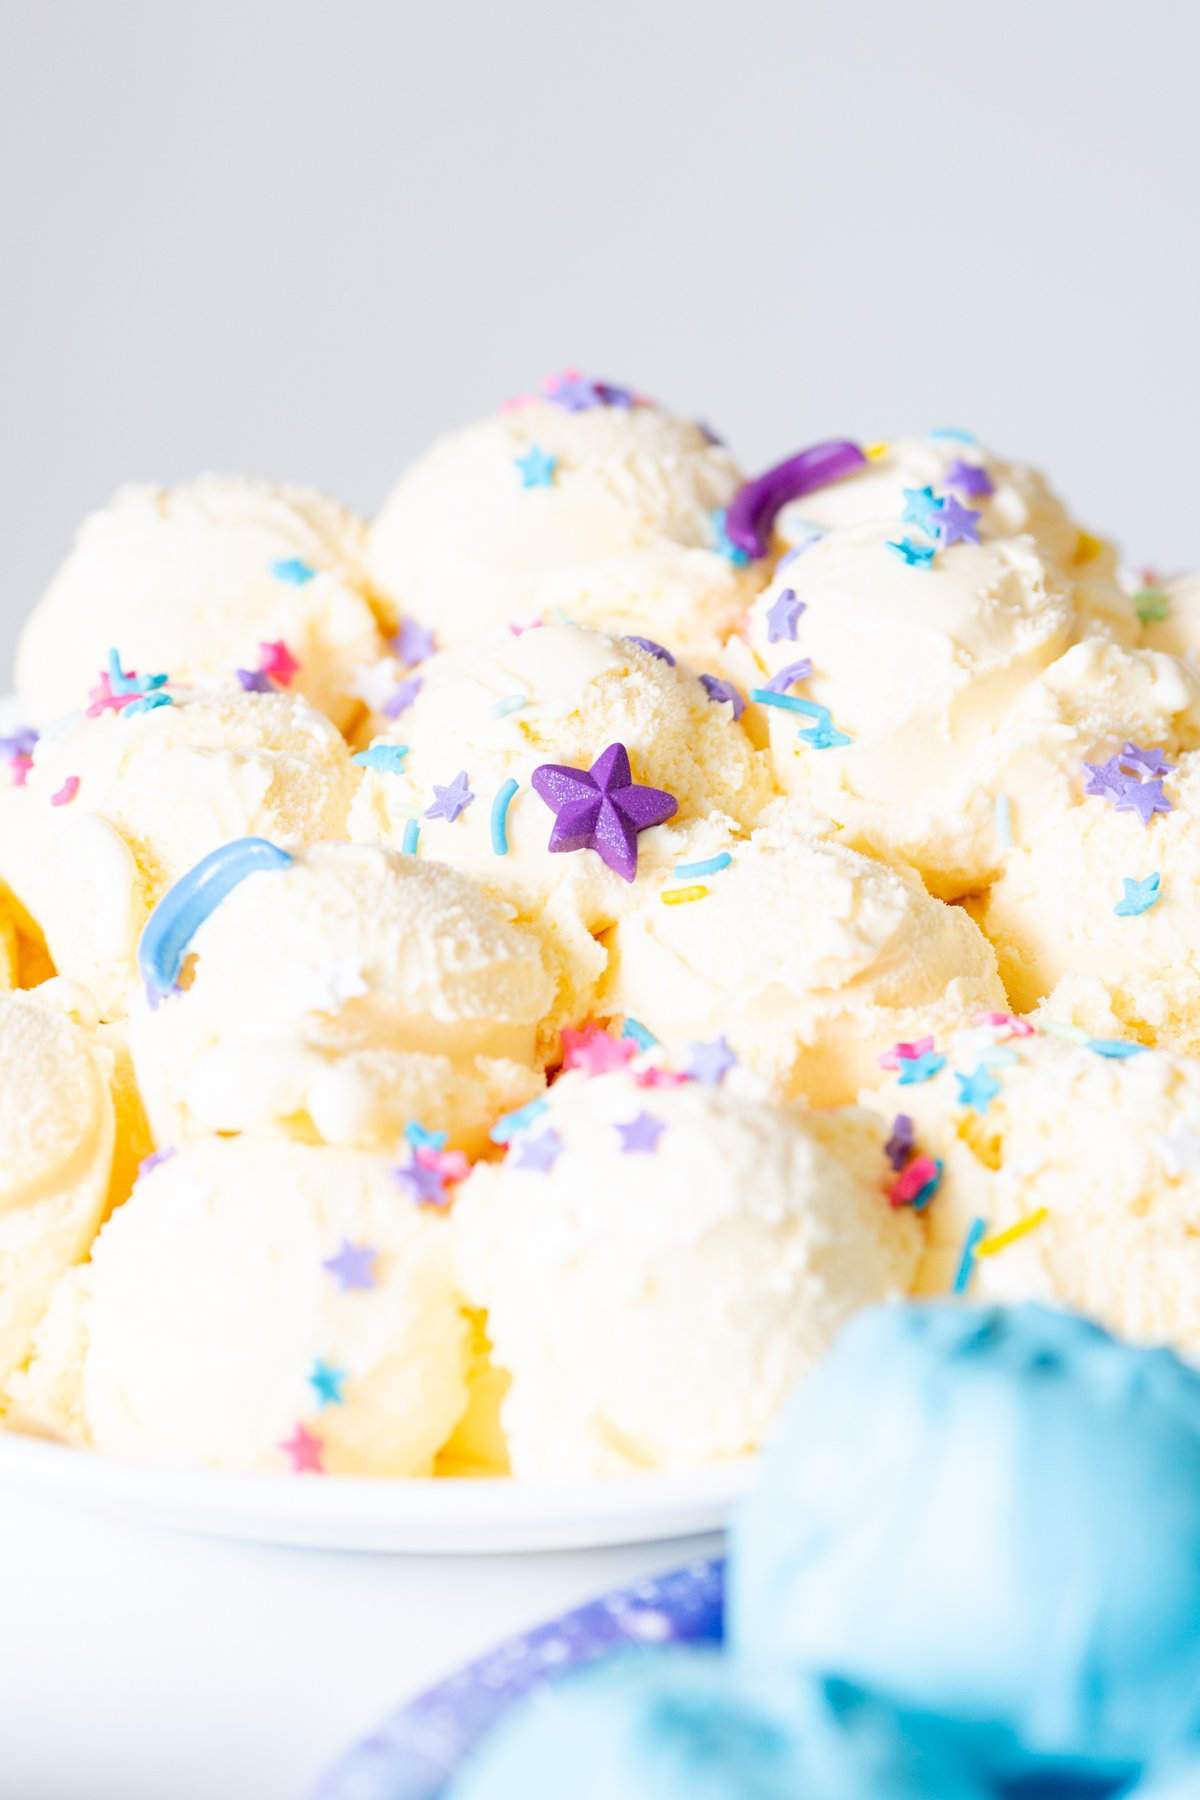 star trek prodigy ice cream, vanilla ice cream topped with sprinkles